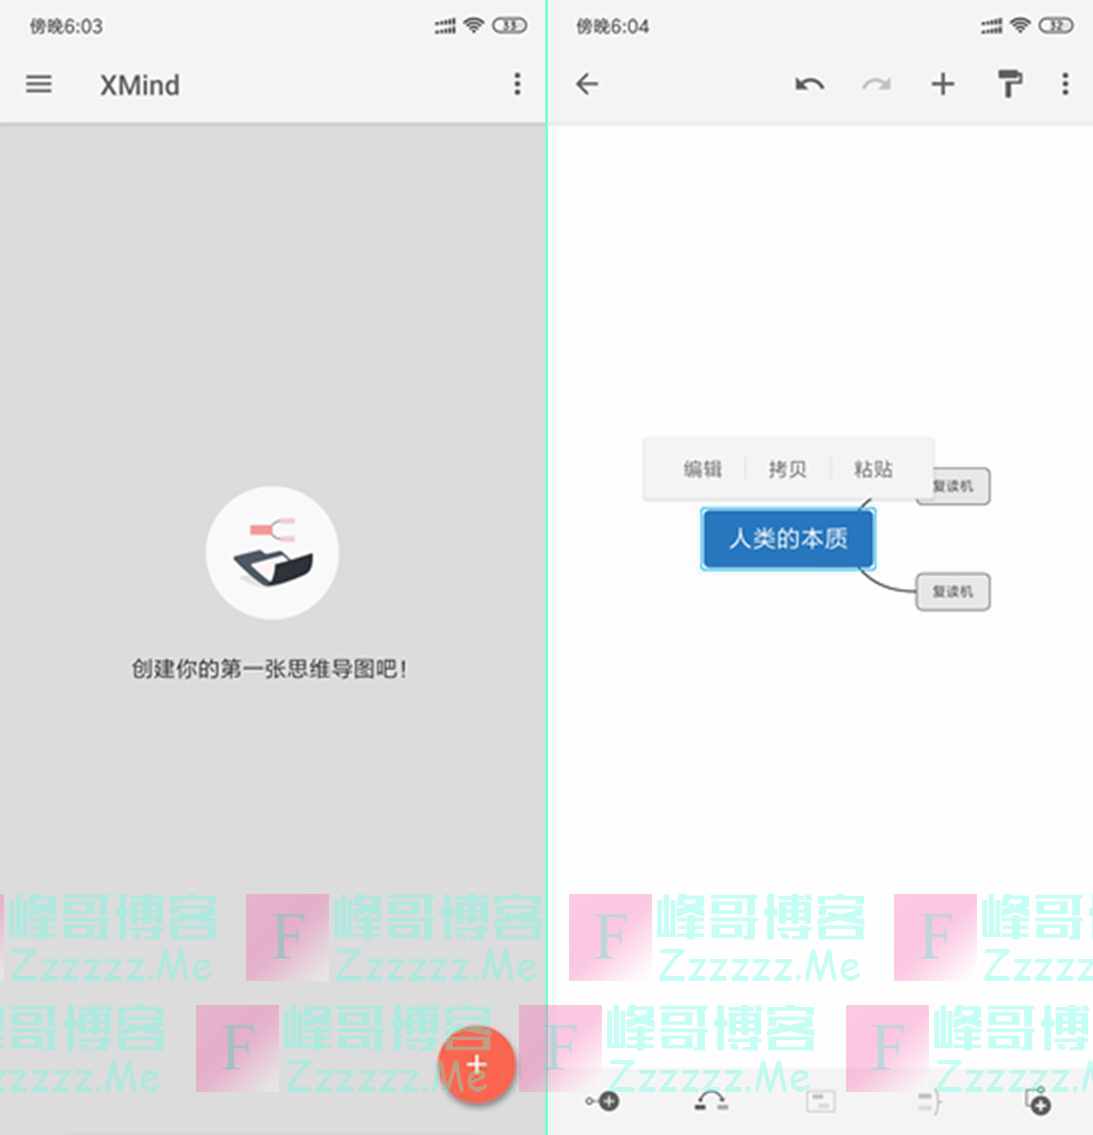 安卓思维导图软件XMind Pro V1.3.15 最新直装内购中文汉化破解版